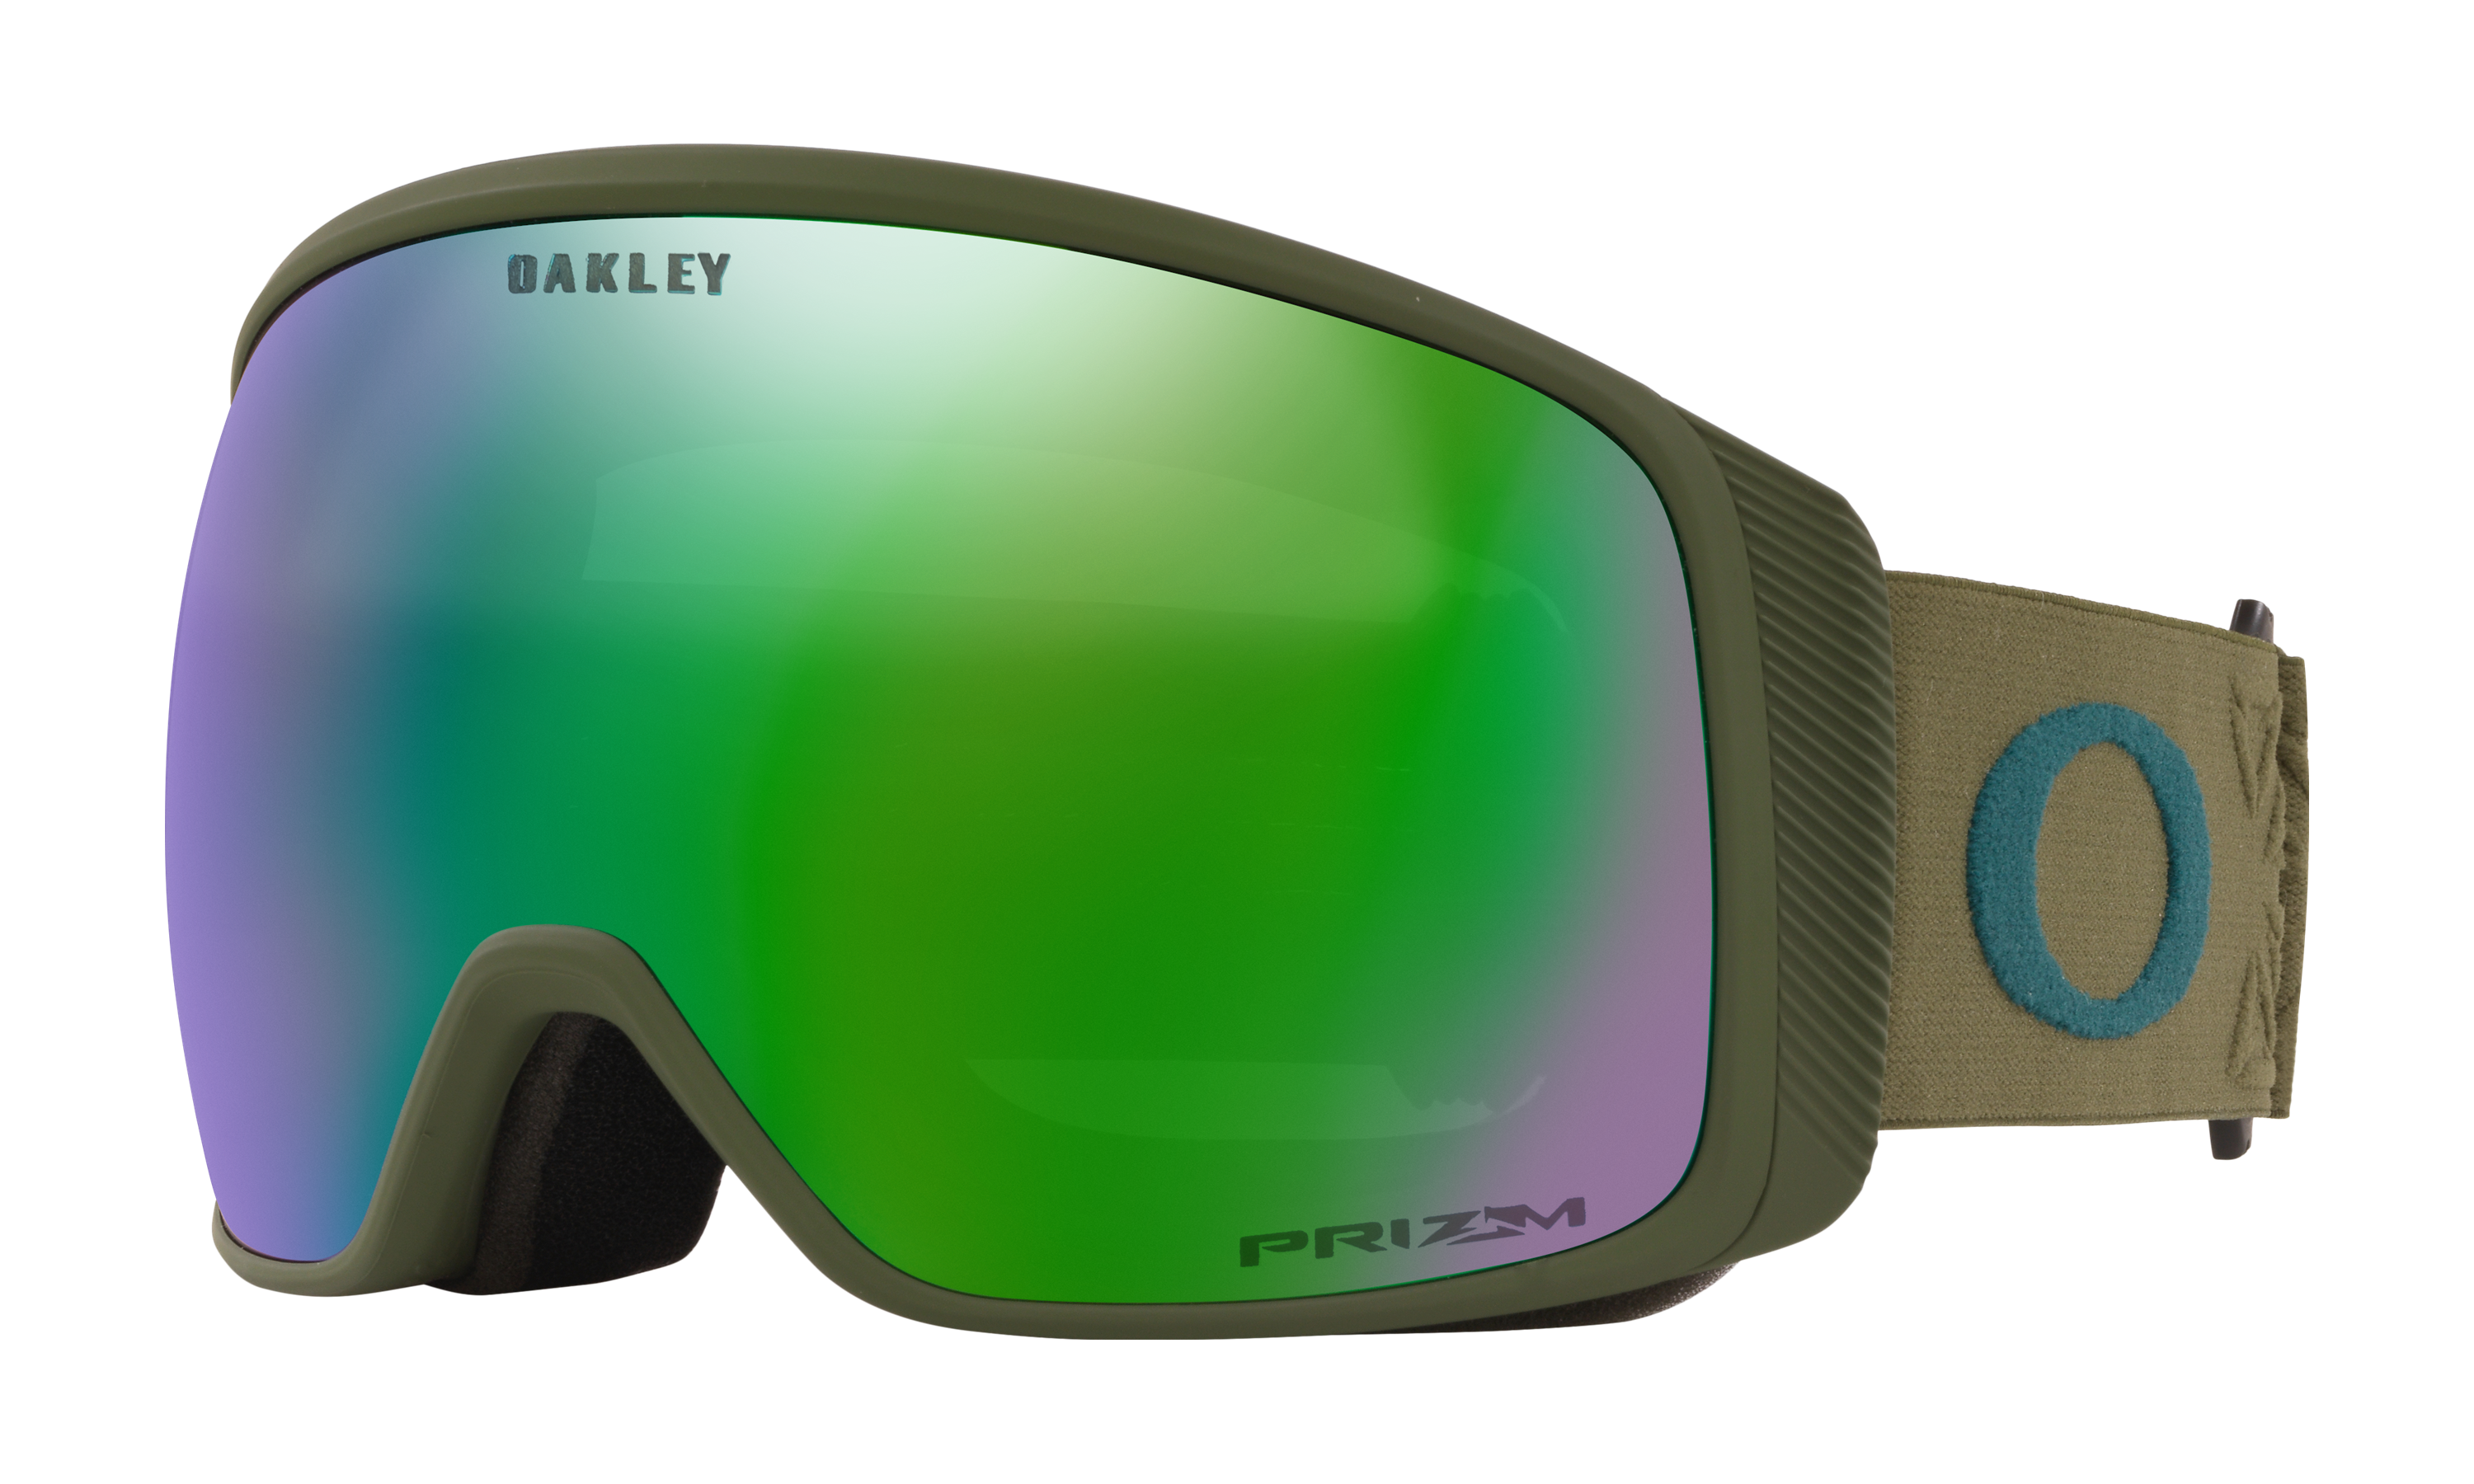 oakley prizm ski goggles